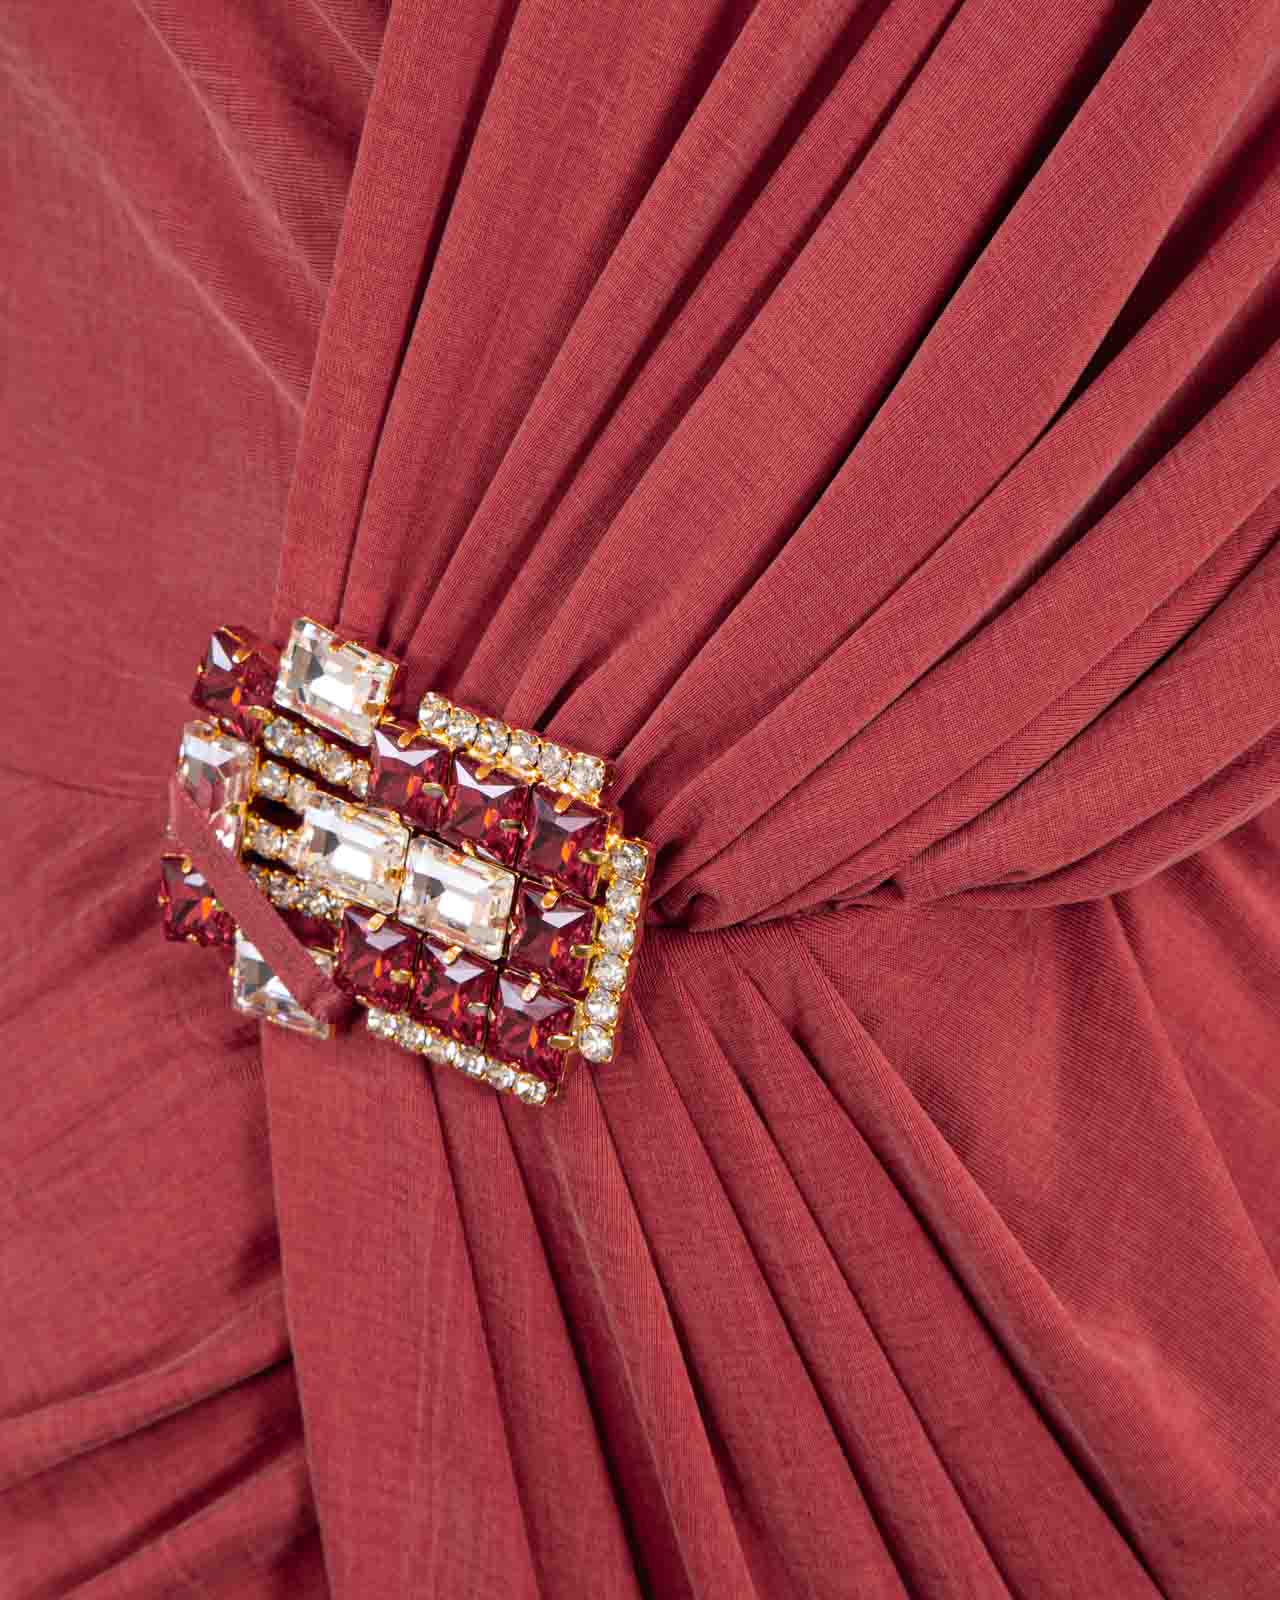 Shop Elisabetta Franchi Dresses Red